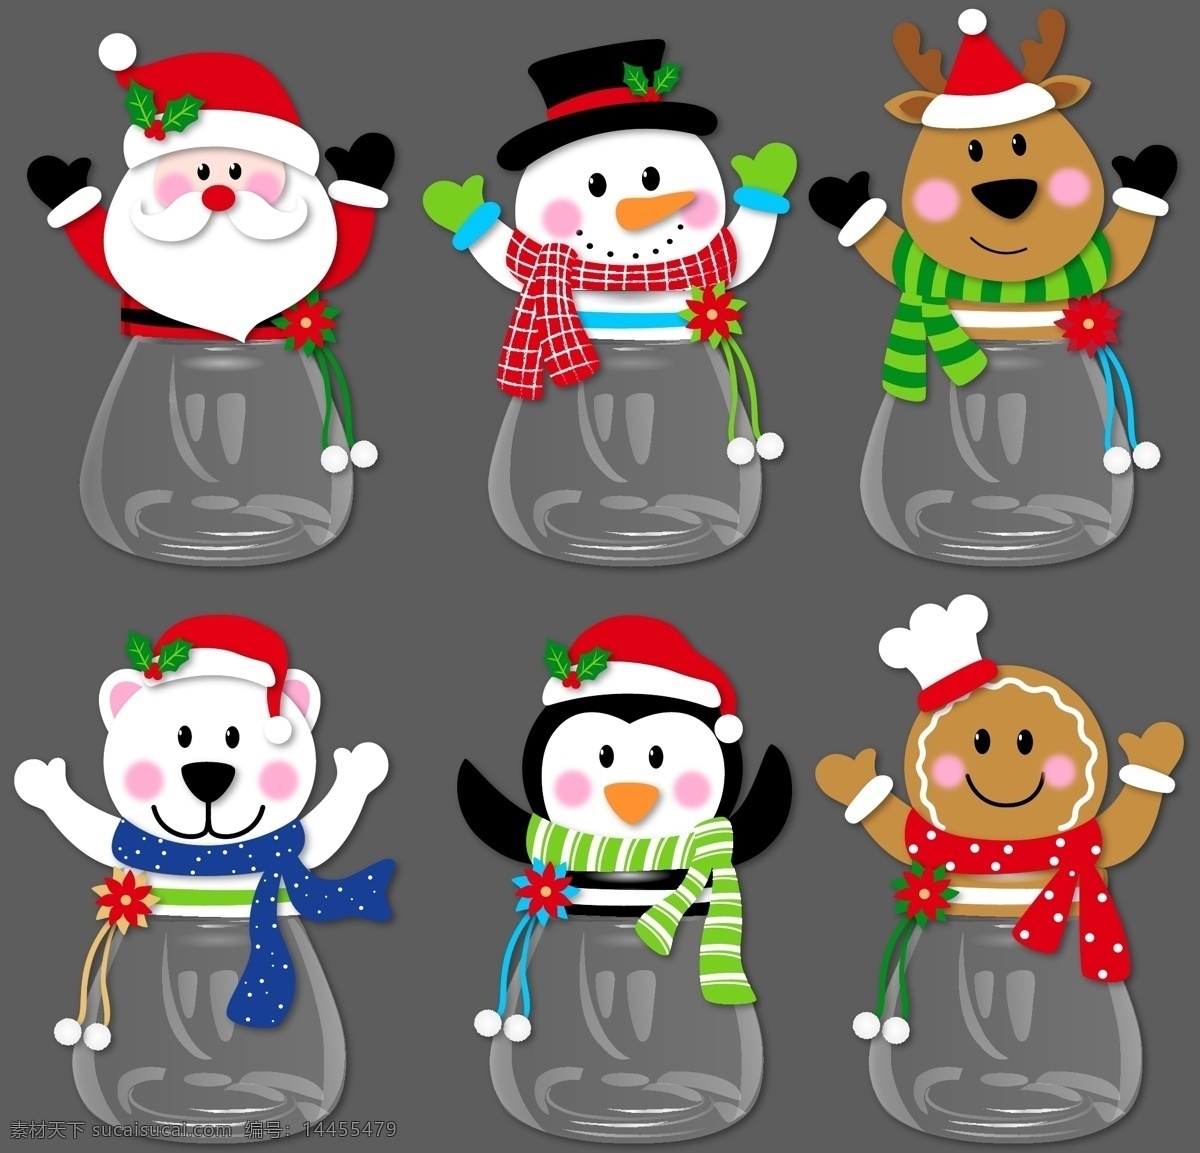 欧美 风格 节日礼品 圣诞节 糖果 罐 圣诞老人 雪人 麋鹿 熊 企鹅 姜饼人 造型糖果罐 灰色